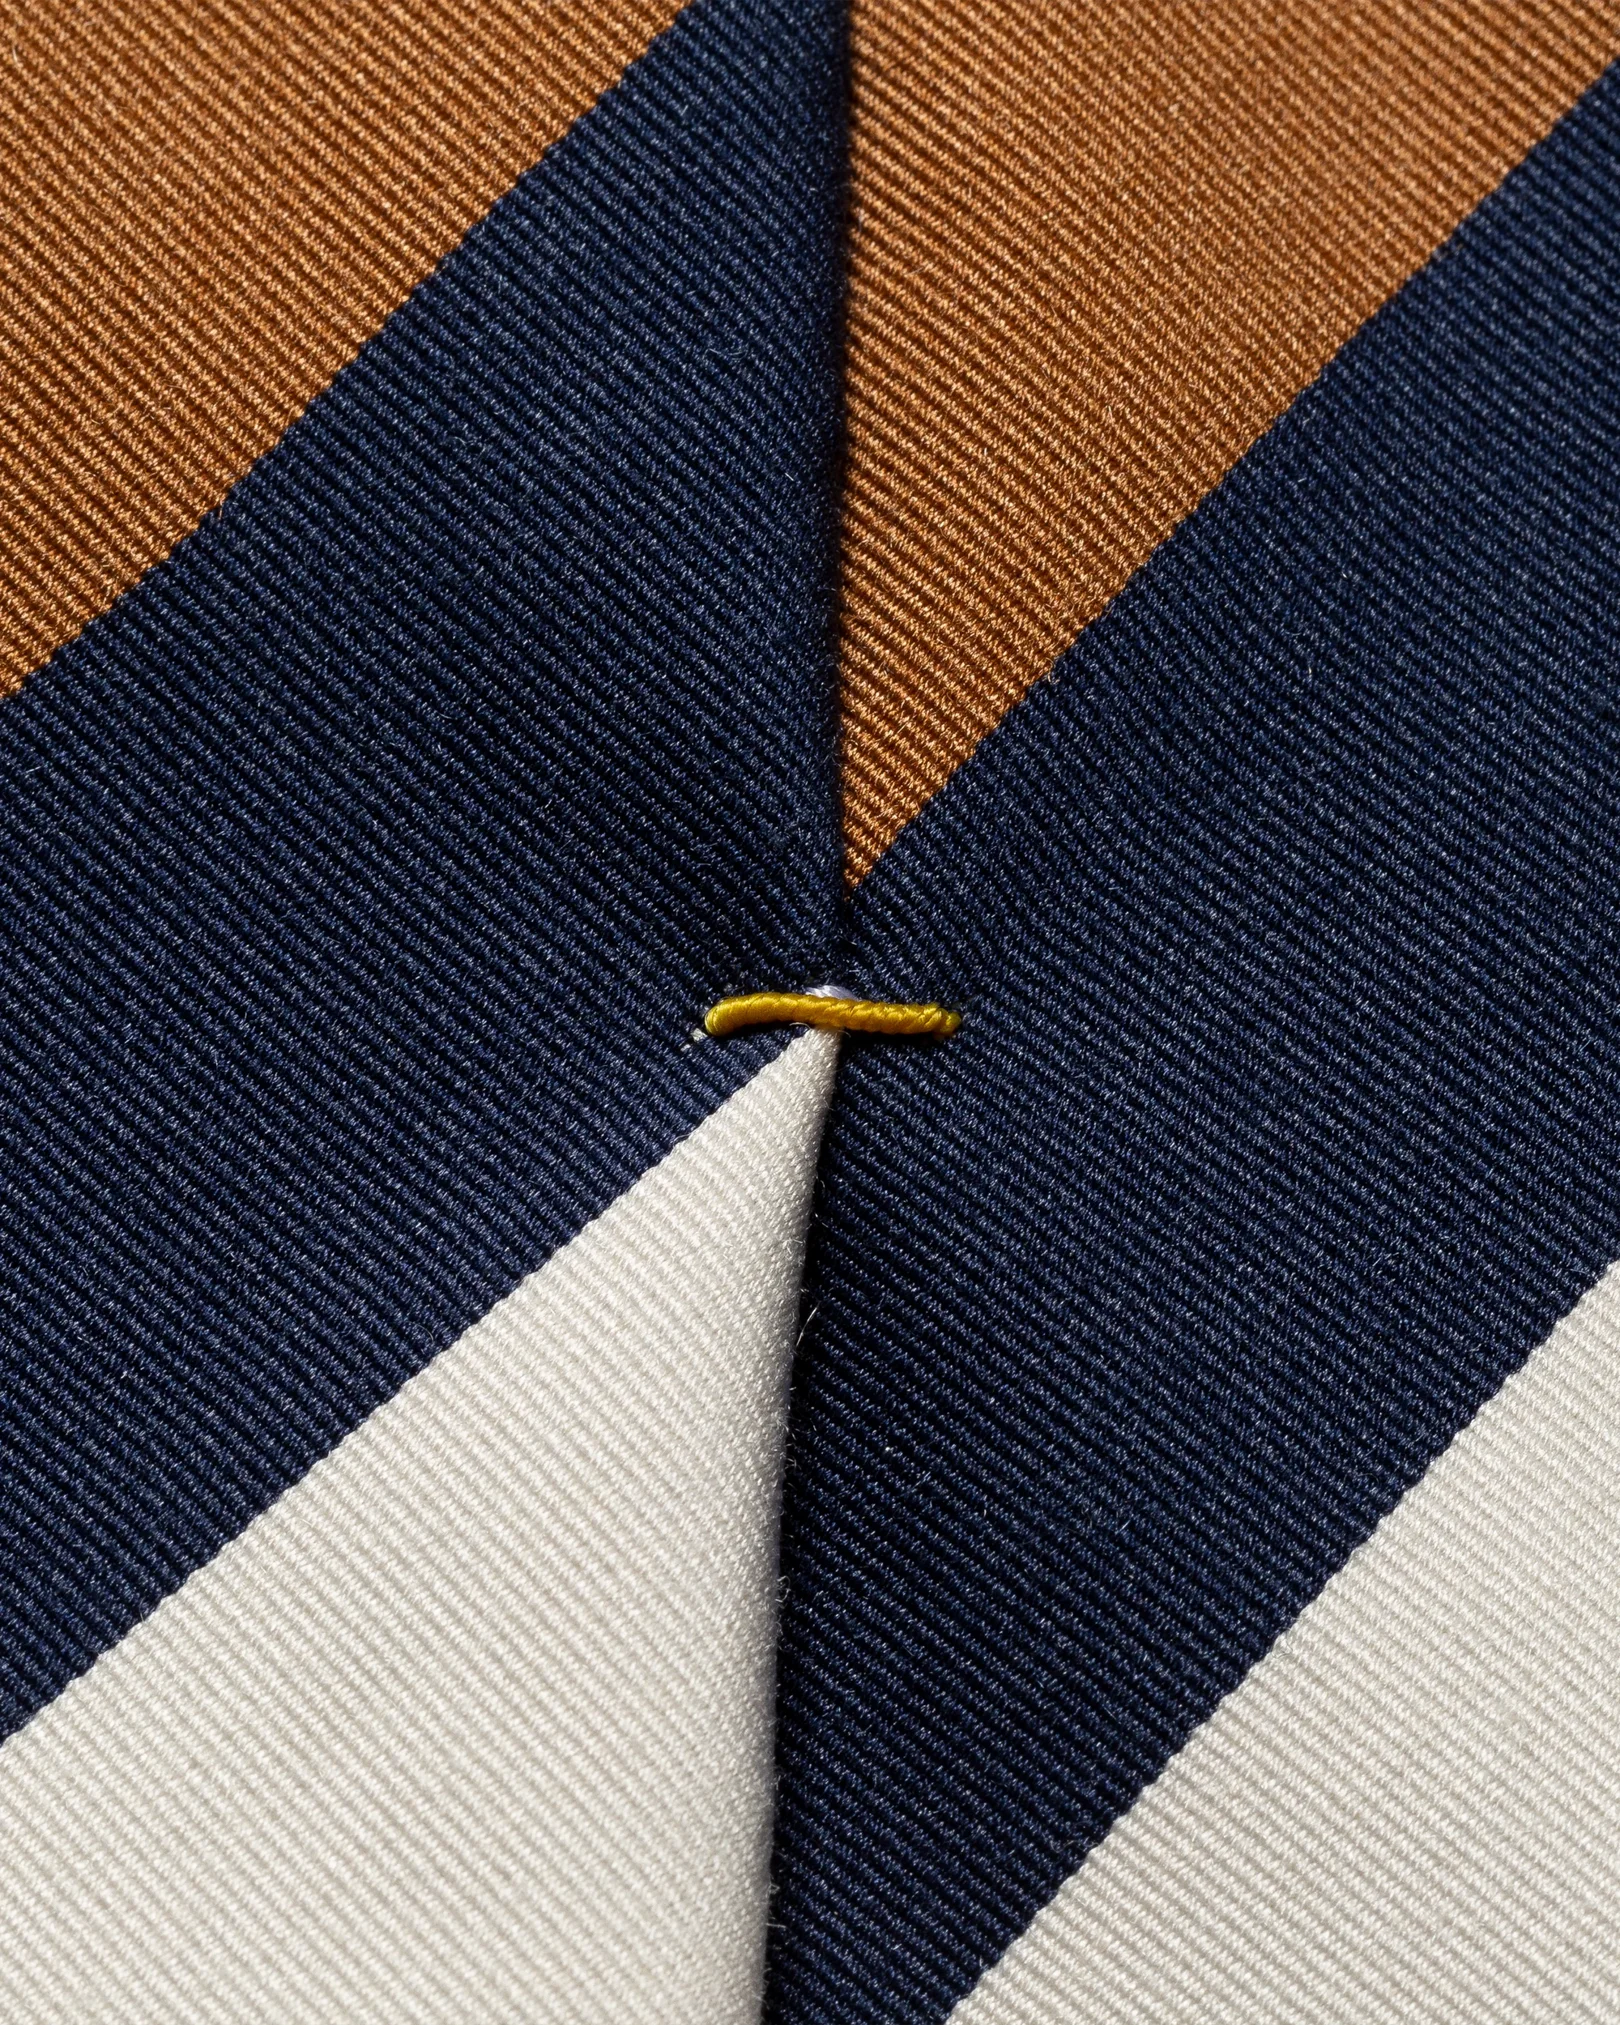 Eton - wide stripes silk blend tie